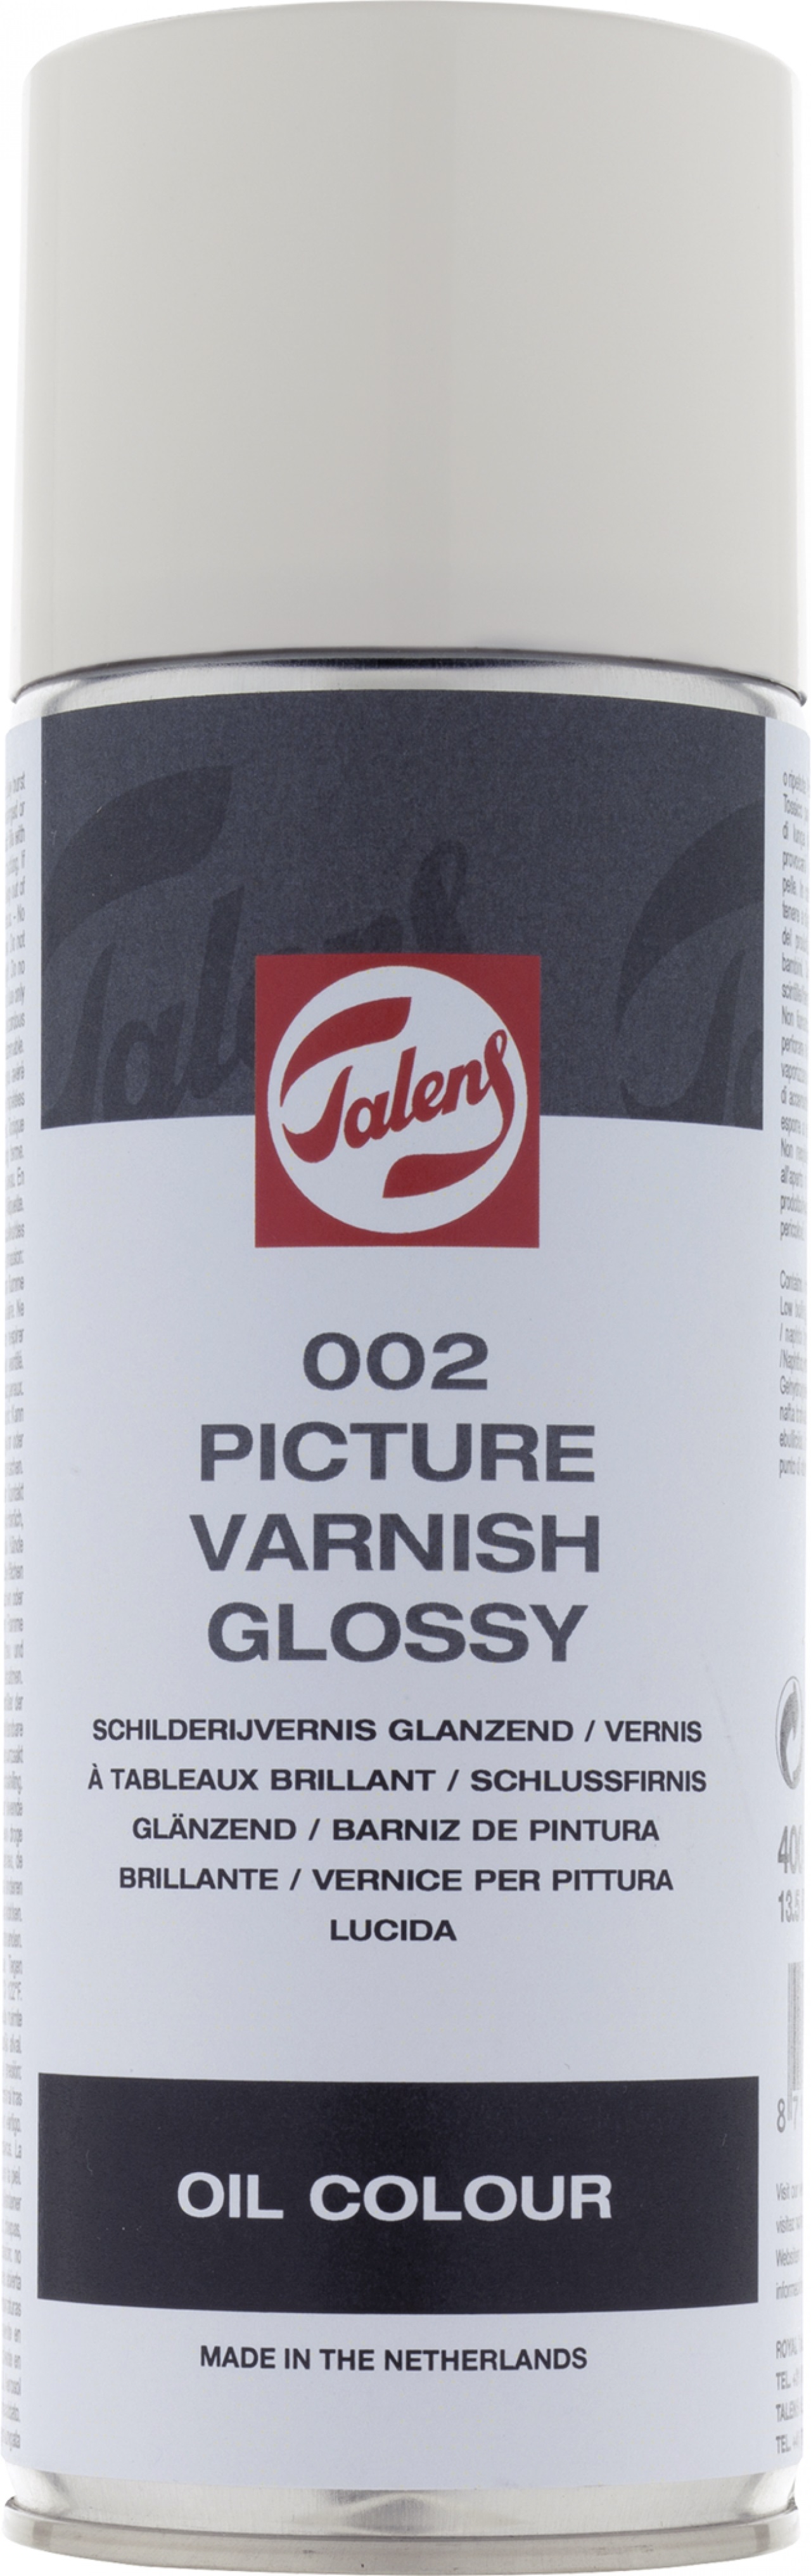 Werniks błyszczący do farb olejnych 002 Talens spray 400 ml Picture Varnish Glossy